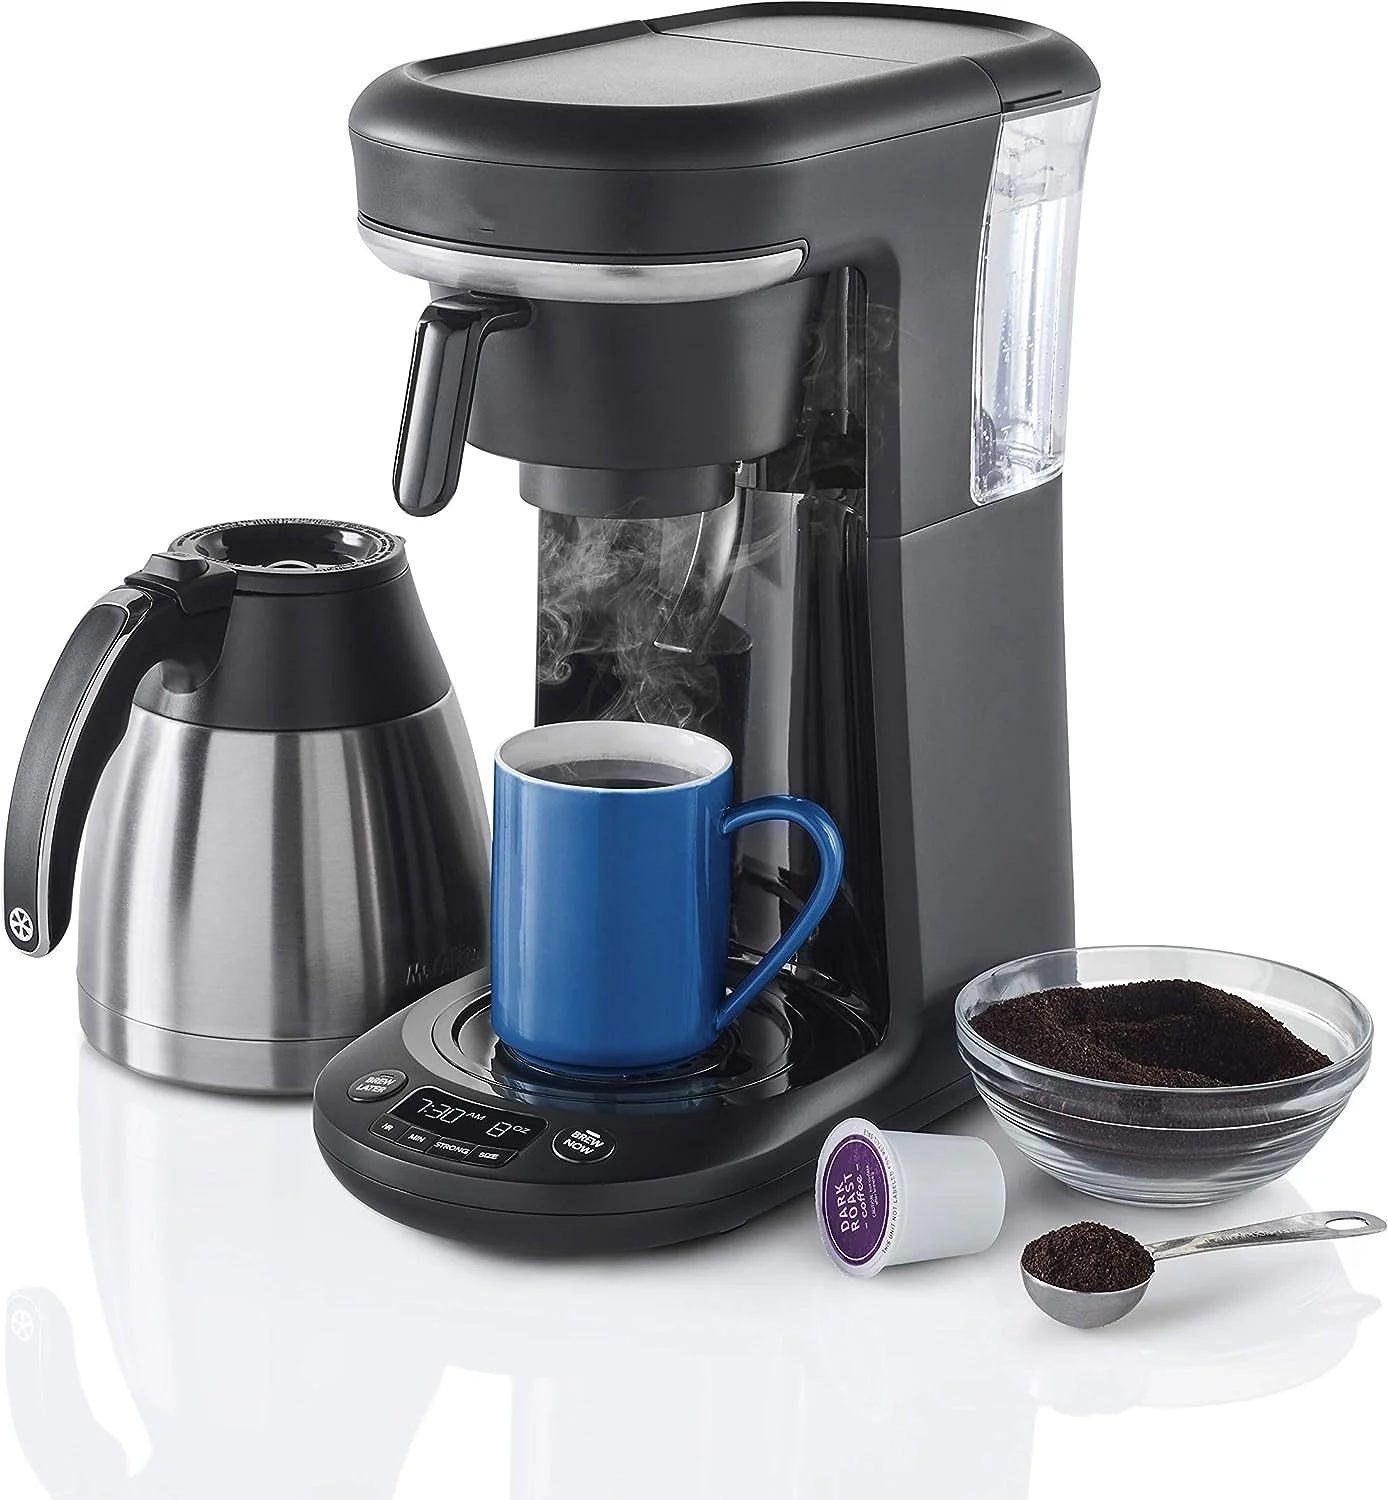 

Кофеварка, программируемая кофемашина для одноразового или графин, 10 чашек, Черная